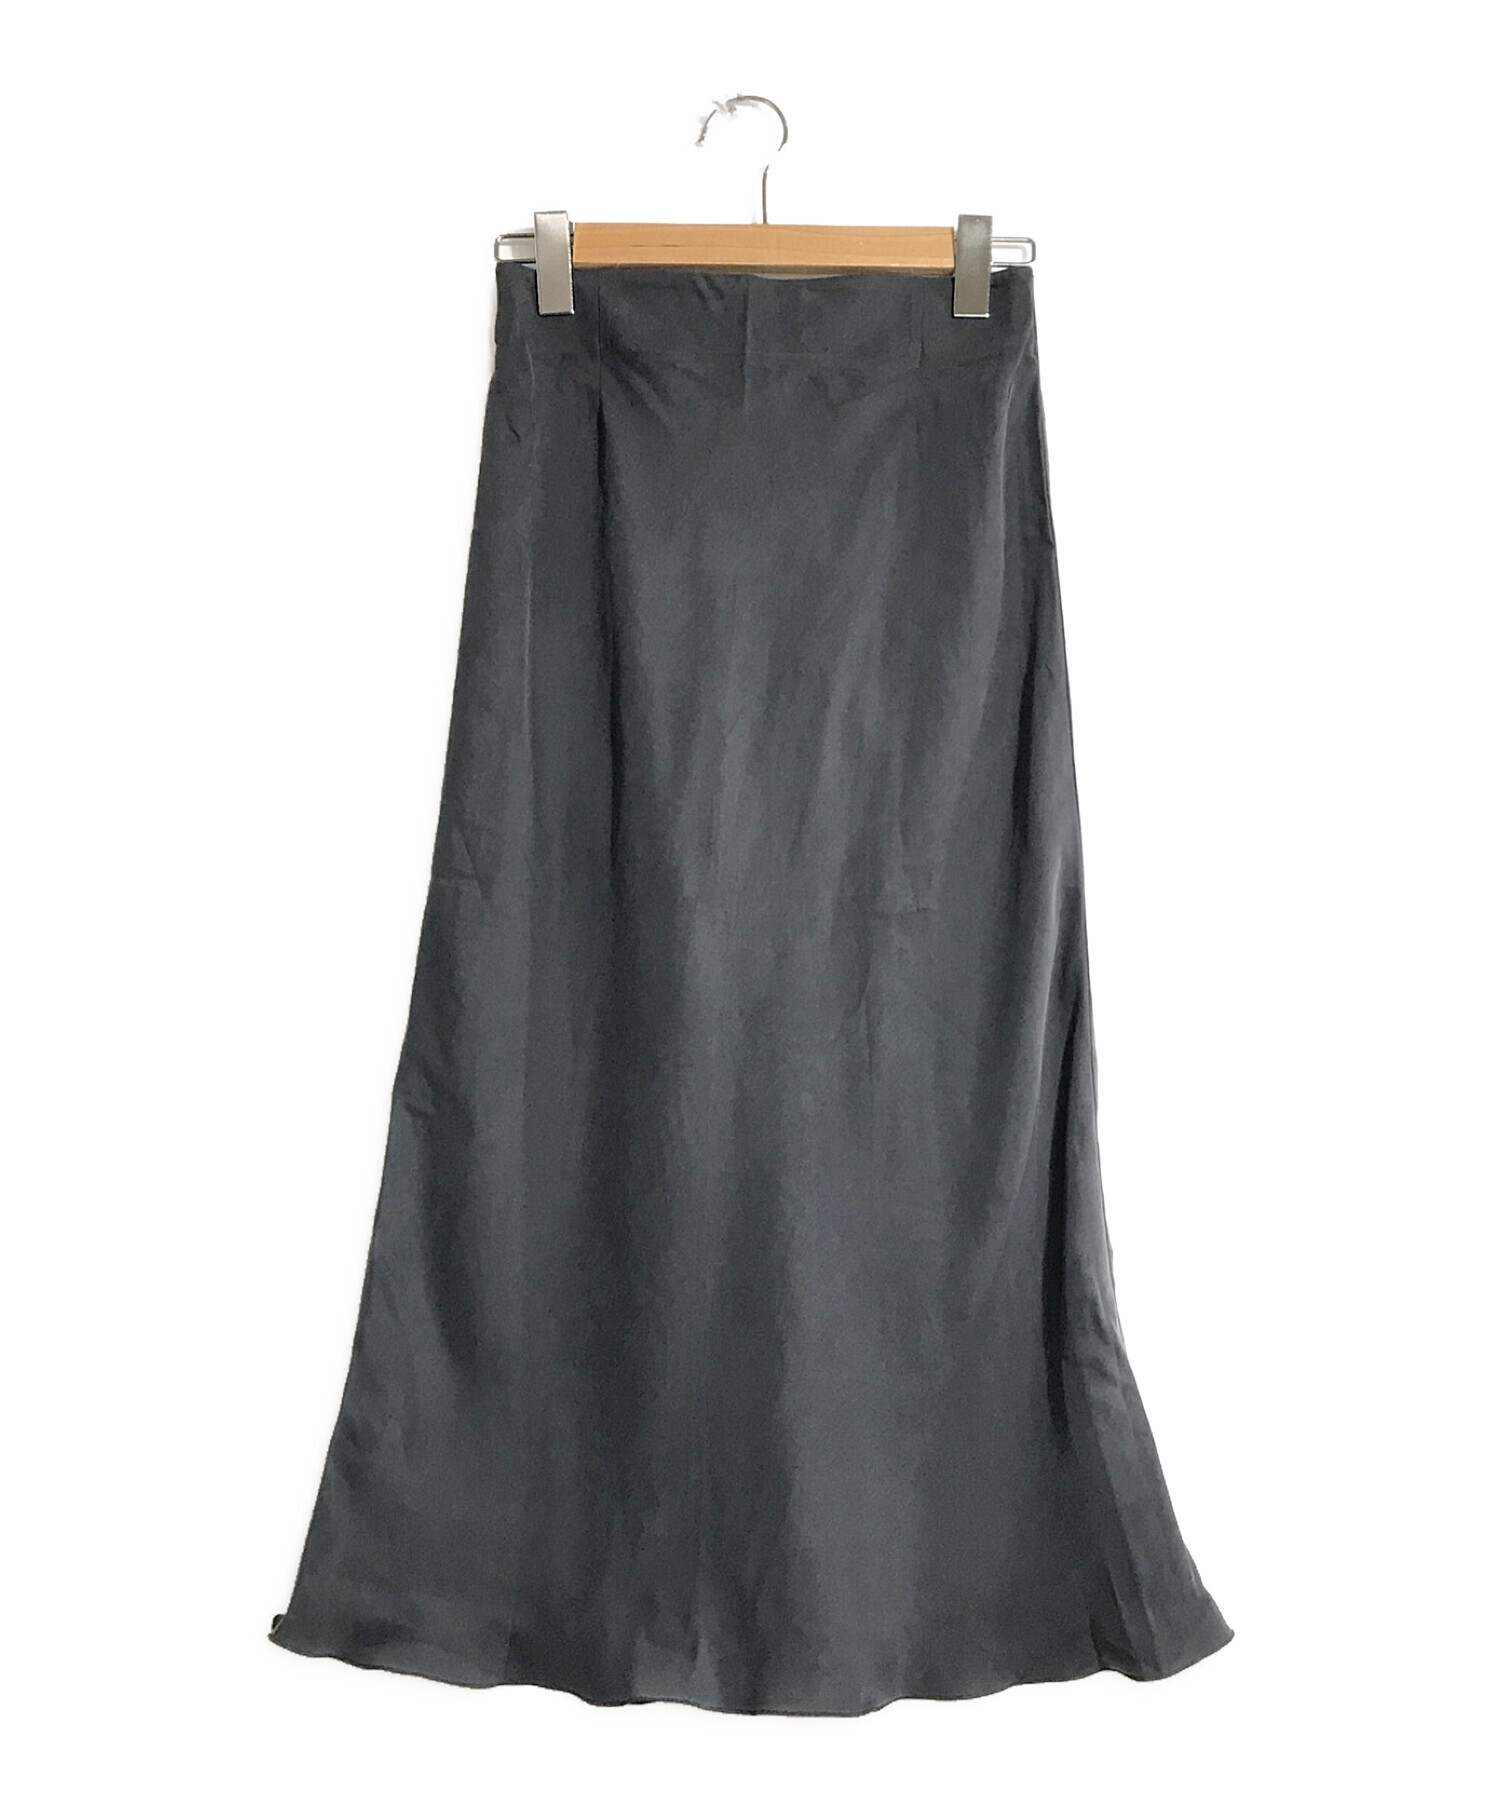 ルイヴィトン 黒サテンスカート 38 Mサイズフォーマル